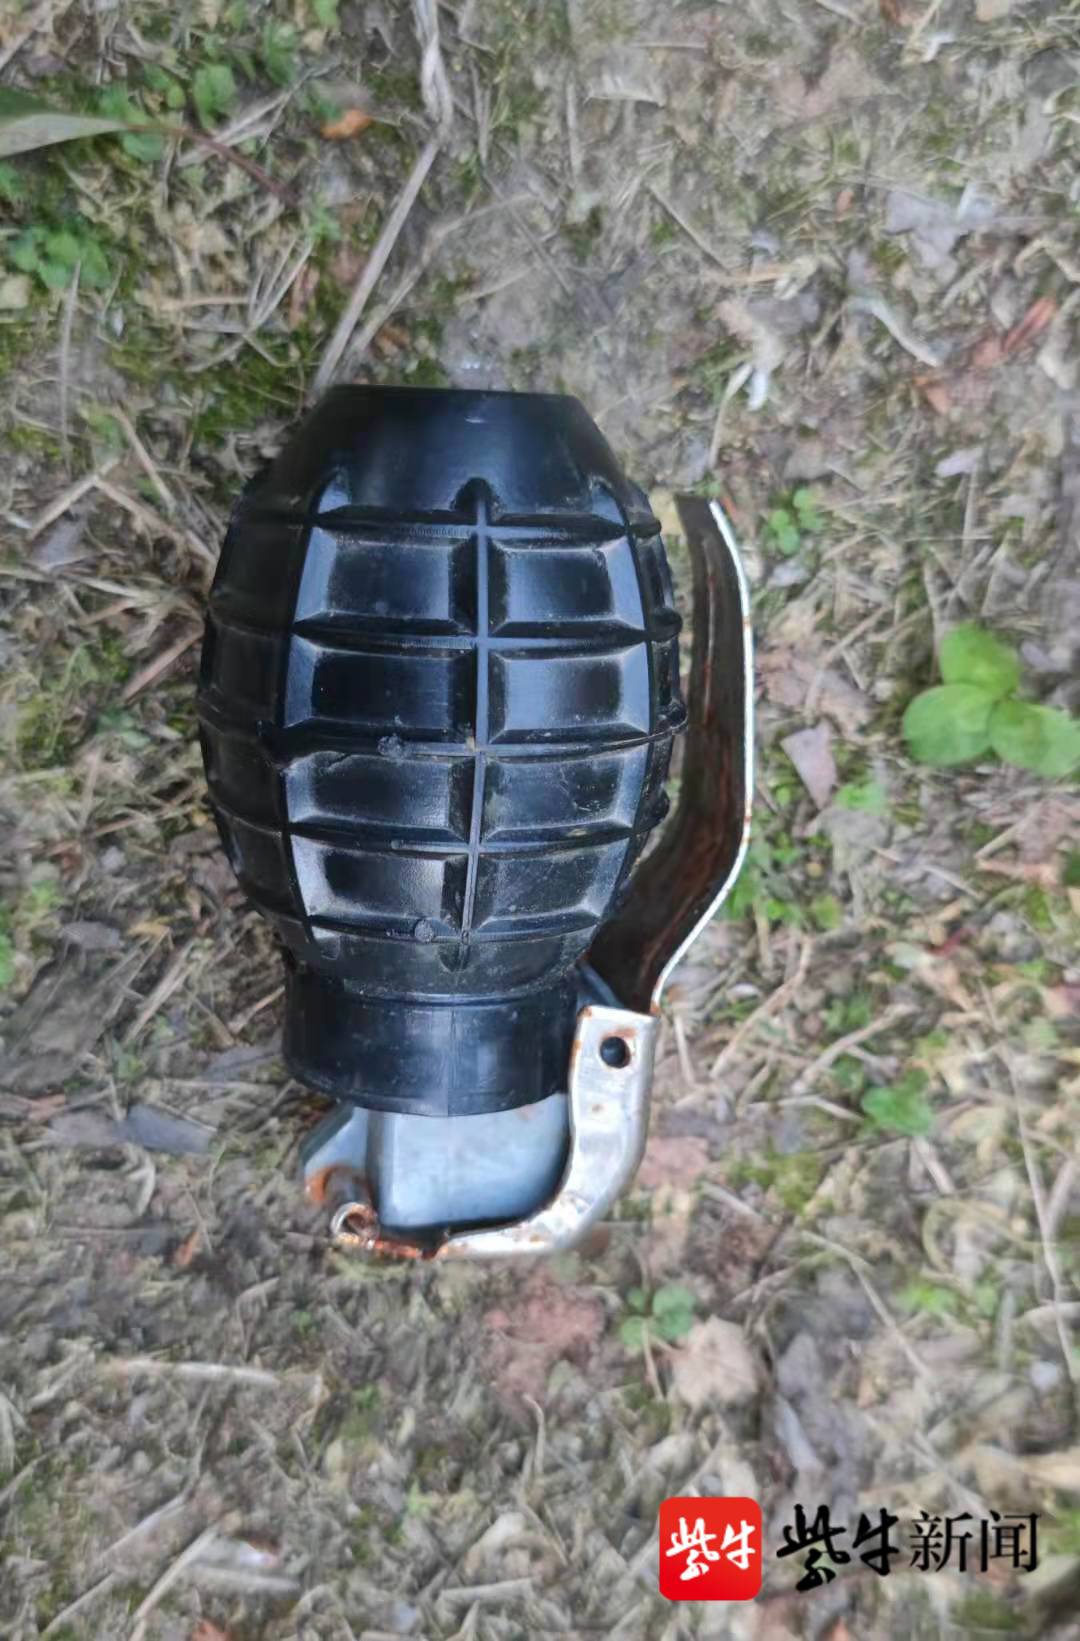 南京江宁一河边发现一枚手榴弹,南京排爆特警检查发现系用过的教练弹